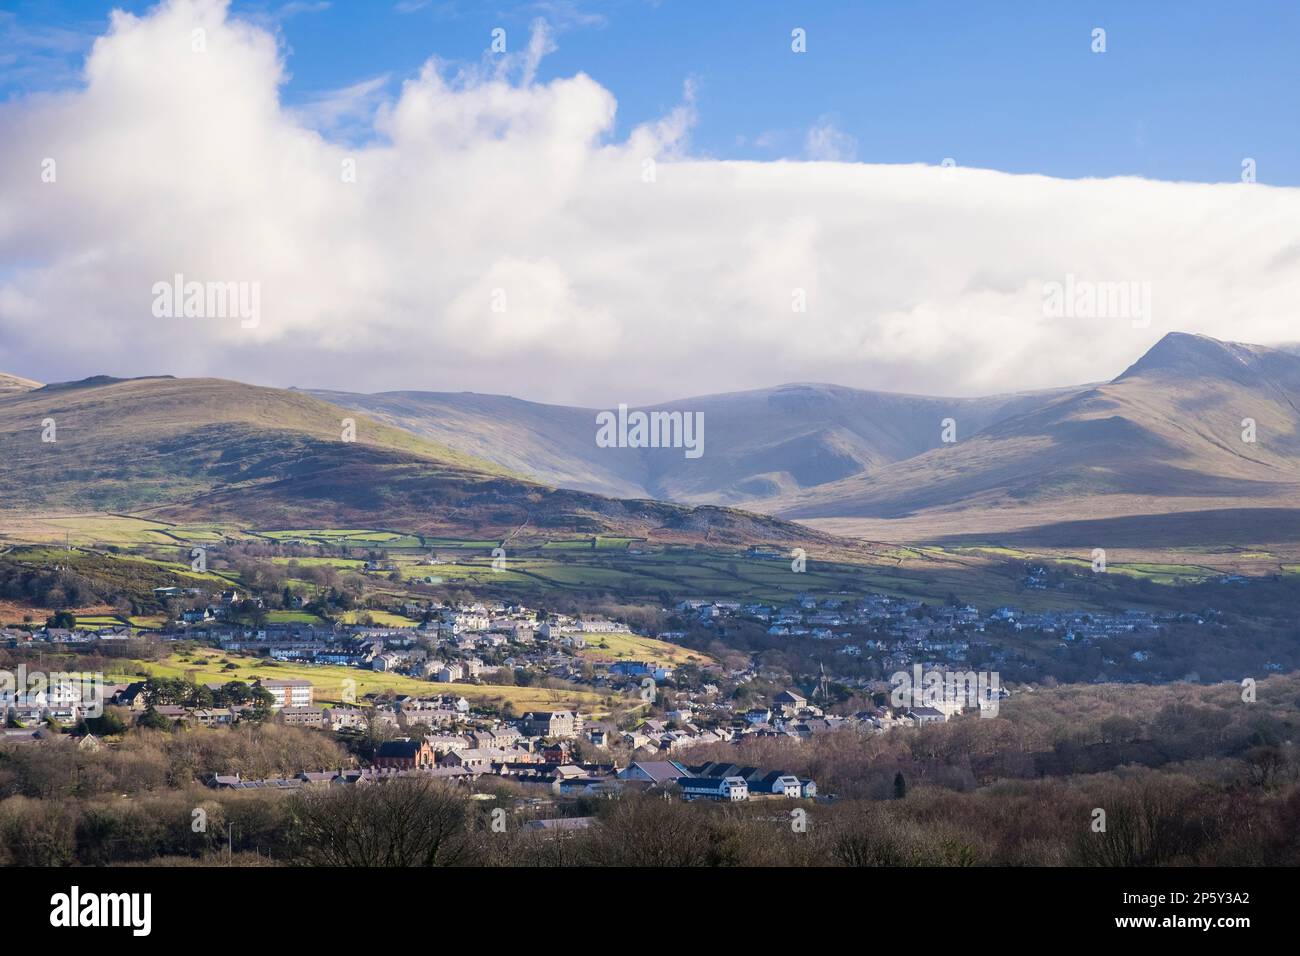 Vue sur la vieille ville de carrière gallois nichée au-dessous des montagnes de Carneddau dans le parc national de Snowdonia. Bethesda, Gwynedd, pays de Galles, Royaume-Uni, Grande-Bretagne Banque D'Images